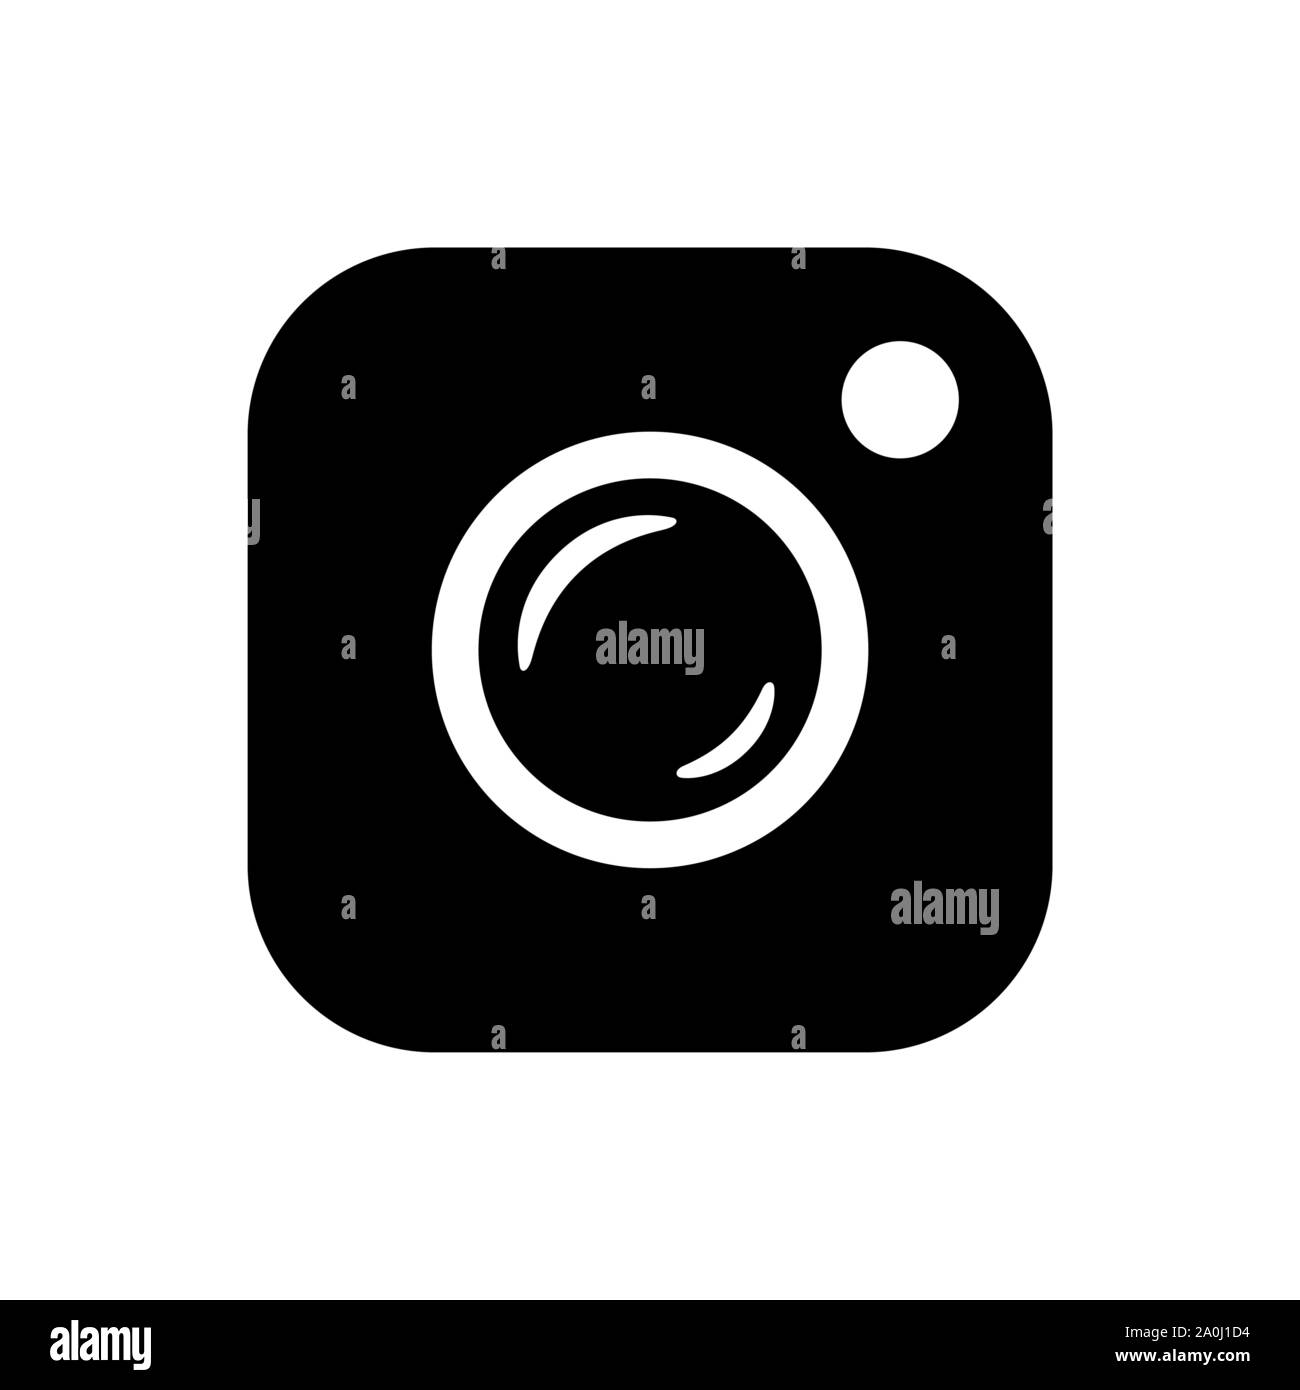 Kamera Symbol. Einfache flache Benutzeroberflächenstil kamera Zeichen Abbildung. Stock Vektor